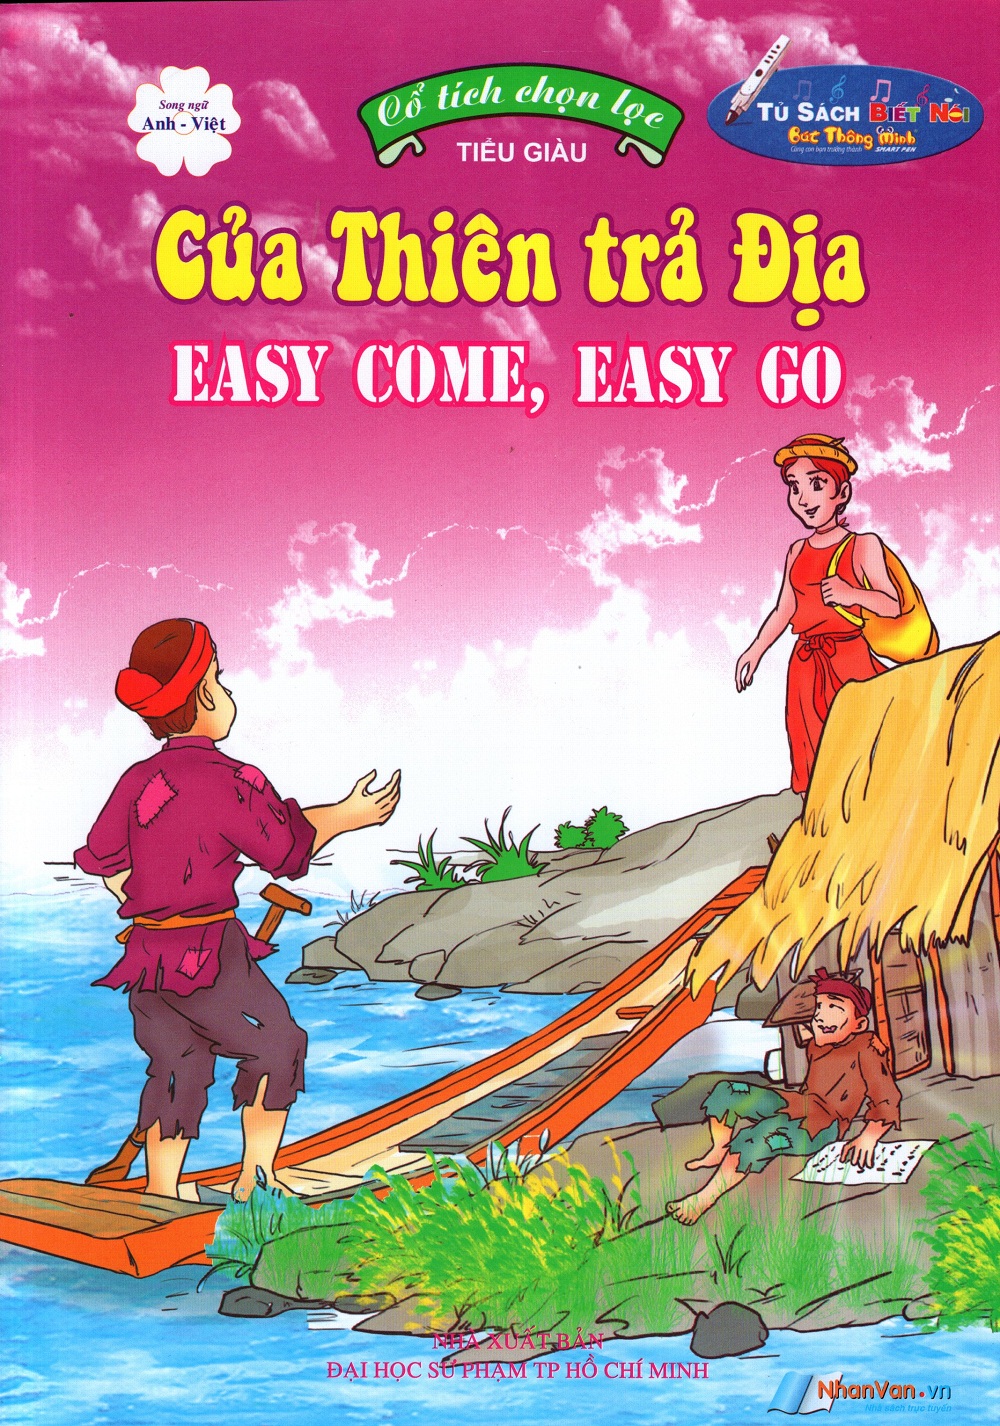 Bìa sách Cổ Tích Chọn Lọc: Của Thiên Trả Địa (Song Ngữ Anh - Việt)